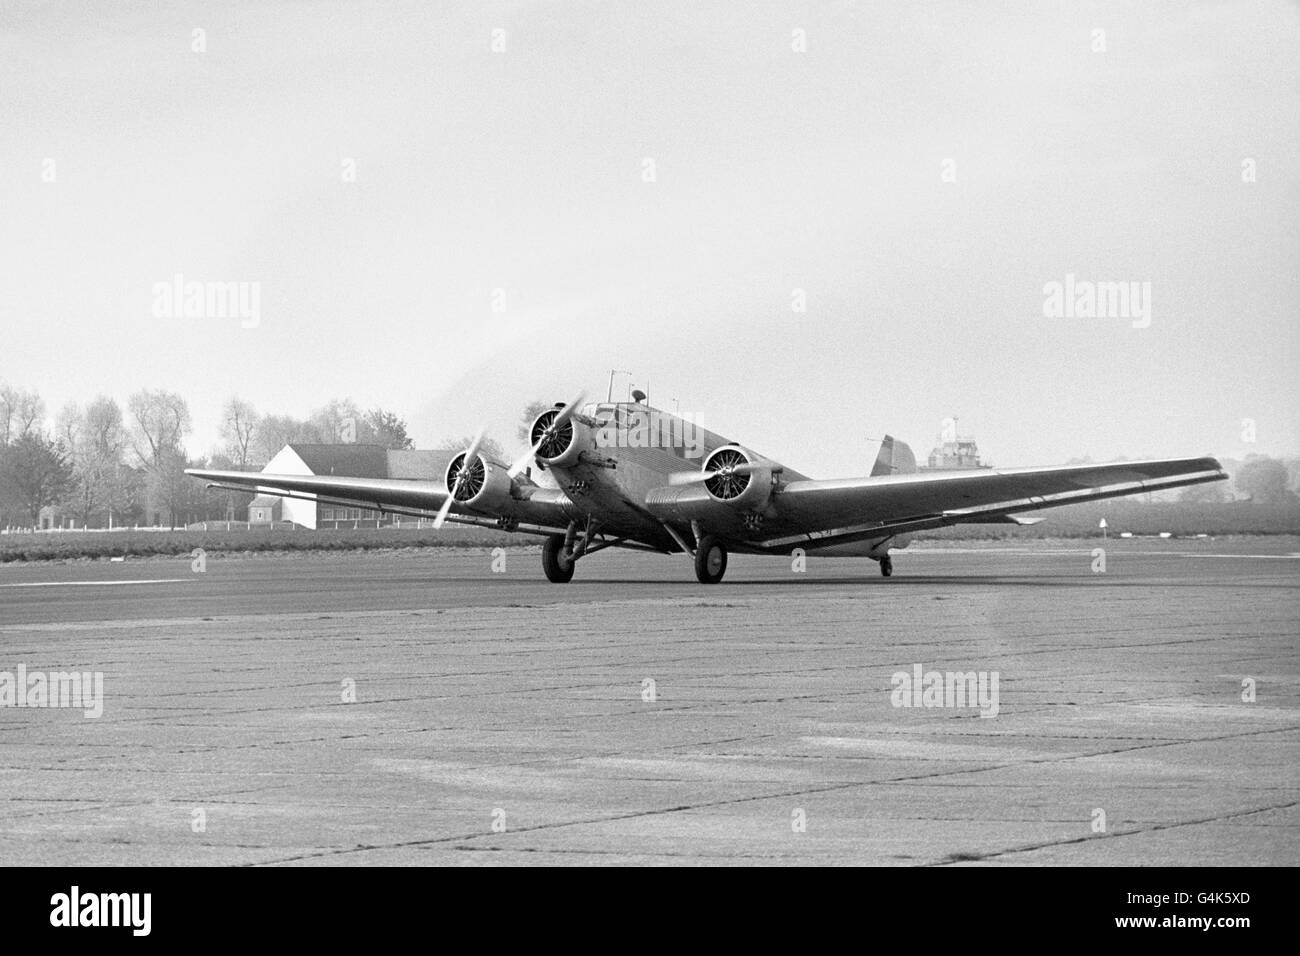 A Junkers Ju 52 taxis le long de la piste à Biggin Hill. L'avion de la Seconde Guerre mondiale allemande aura lieu parmi plus de 200 avions de guerre à la foire aérienne internationale de Biggin Hill ce week-end Banque D'Images